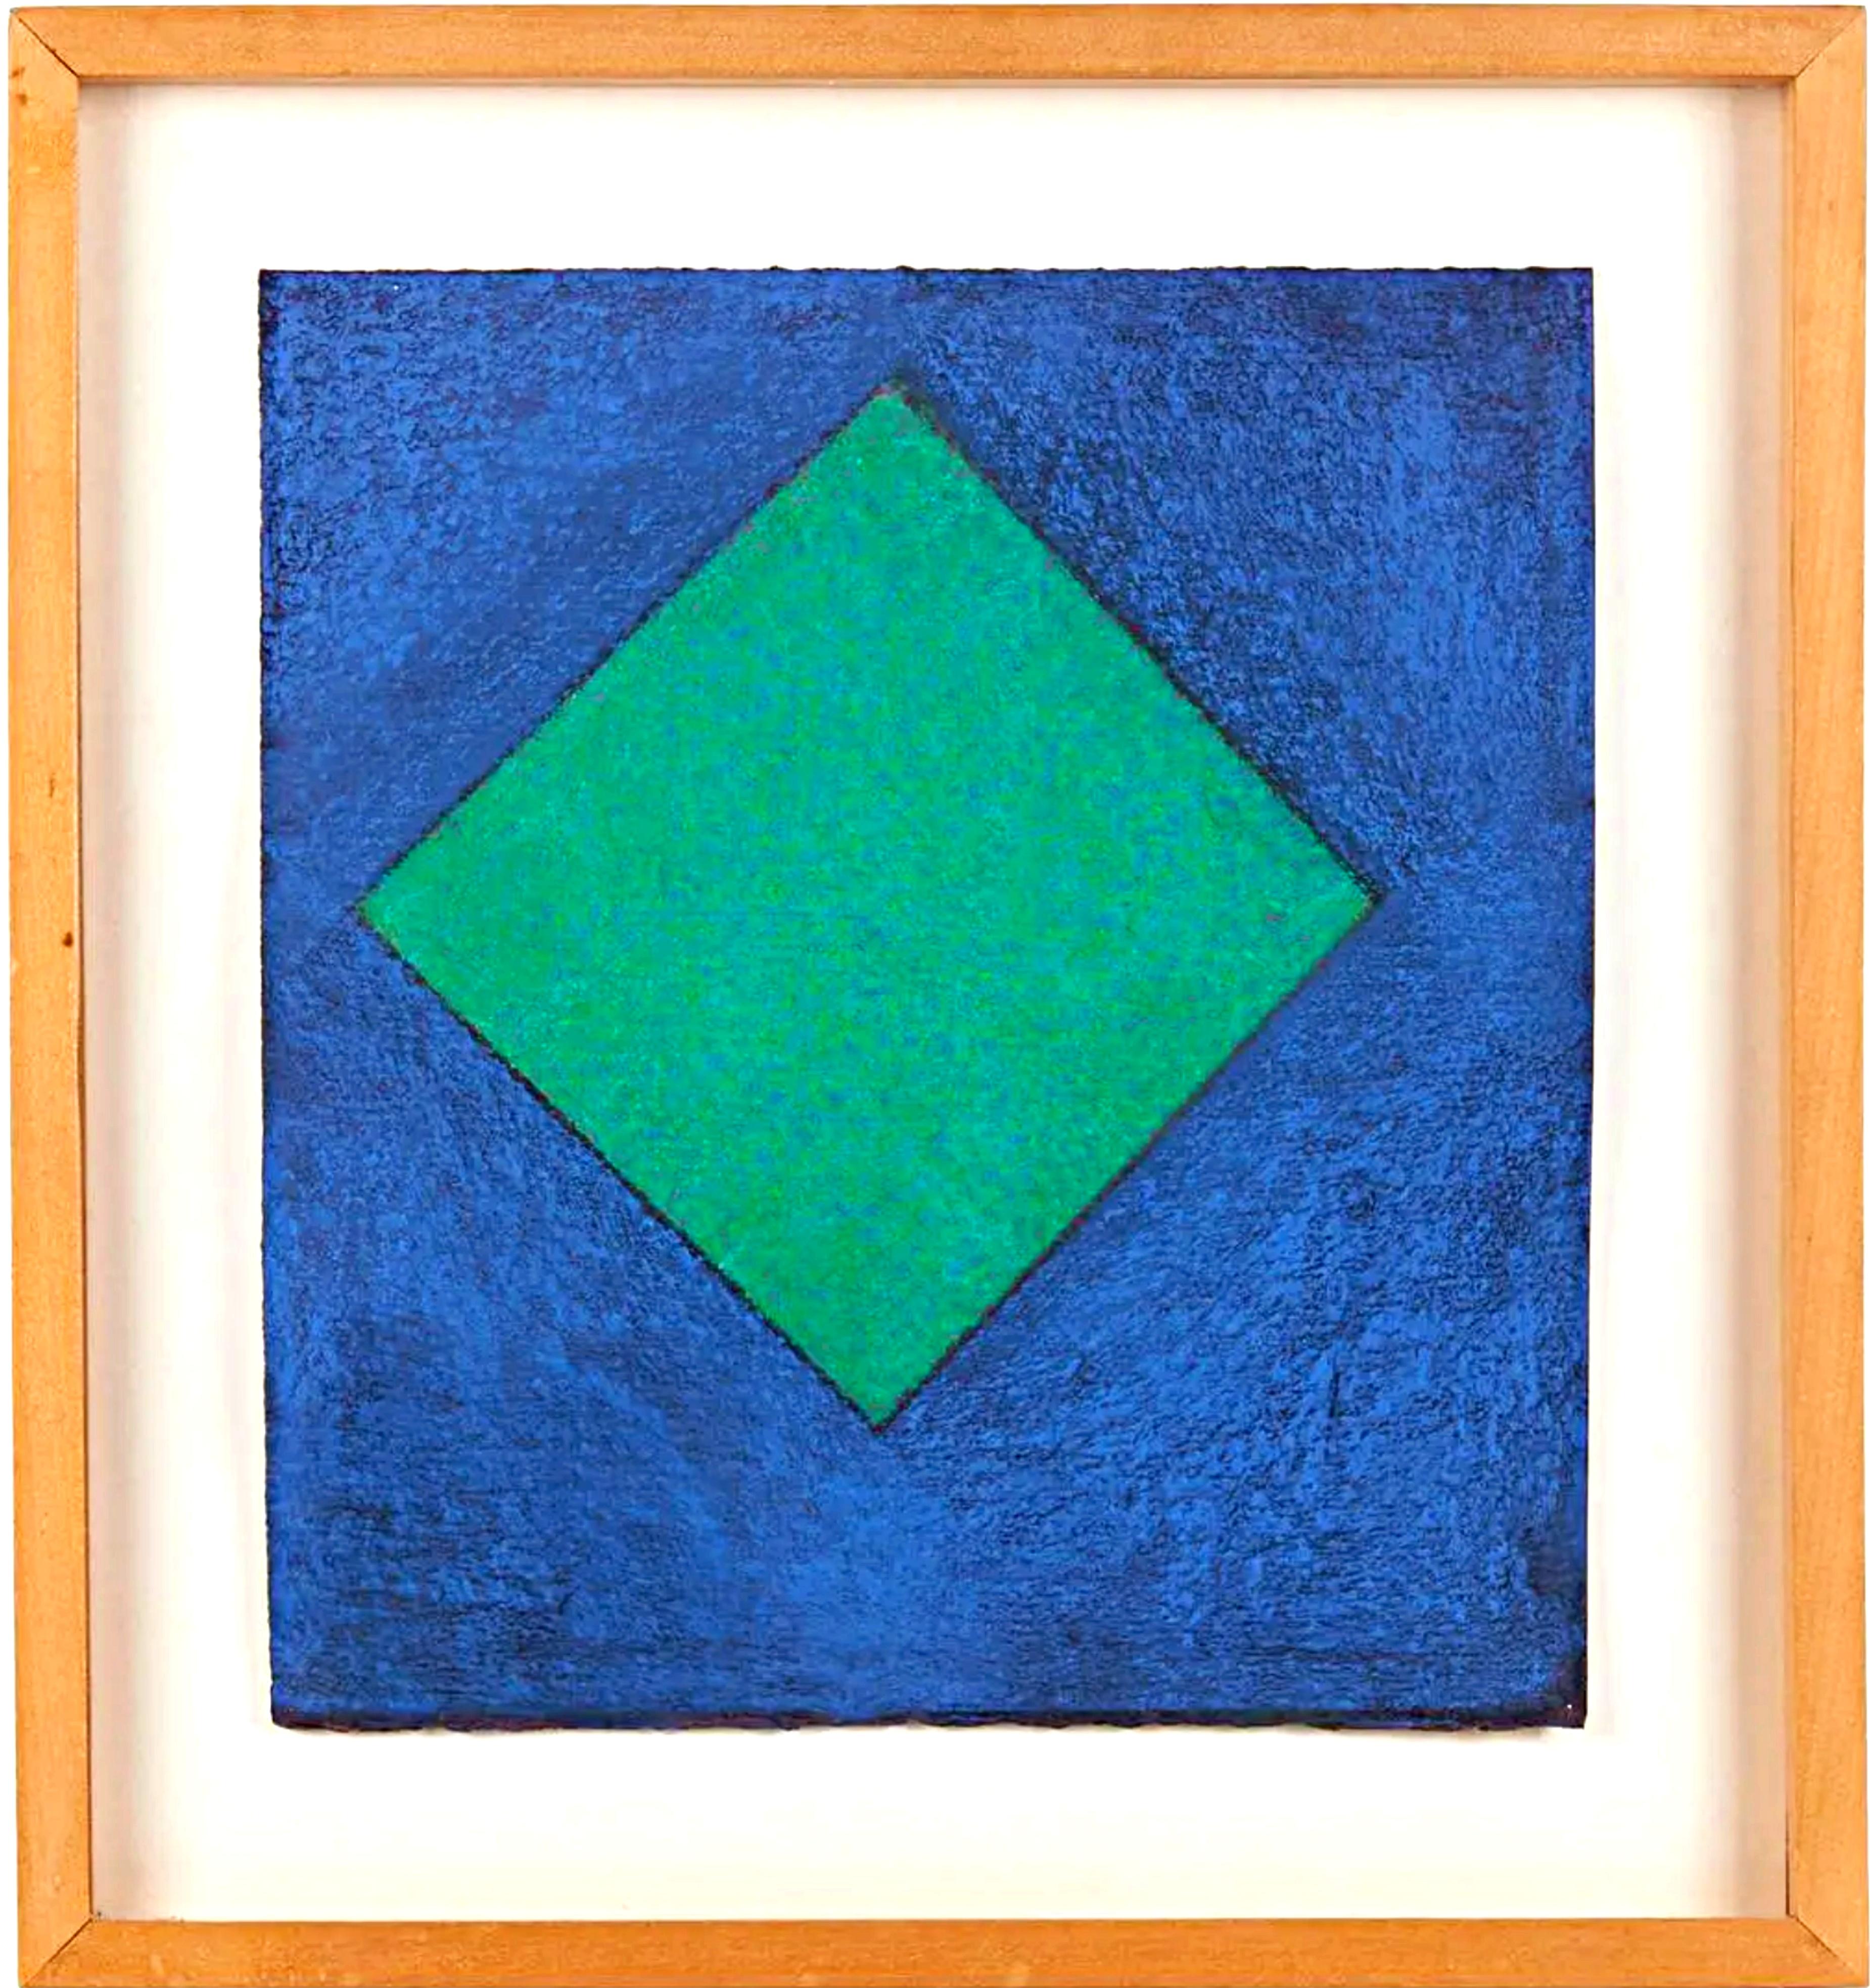 Minimalistisches Gemälde ohne Titel Geometrische Abstraktion, einzigartig, signiert vom bekannten Künstler – Painting von Winston Roeth